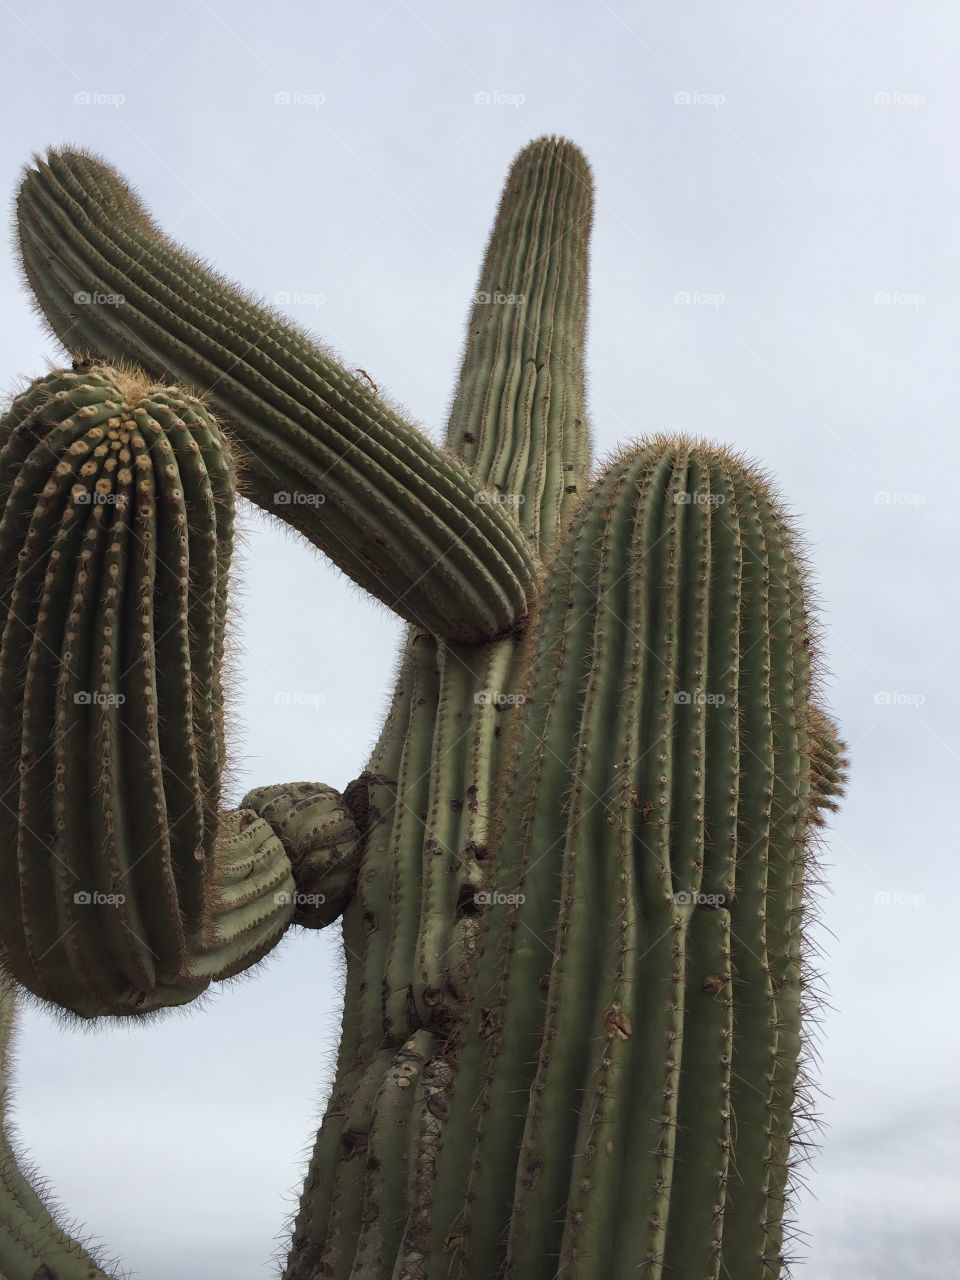 Cactus. Phoenix, AZ.